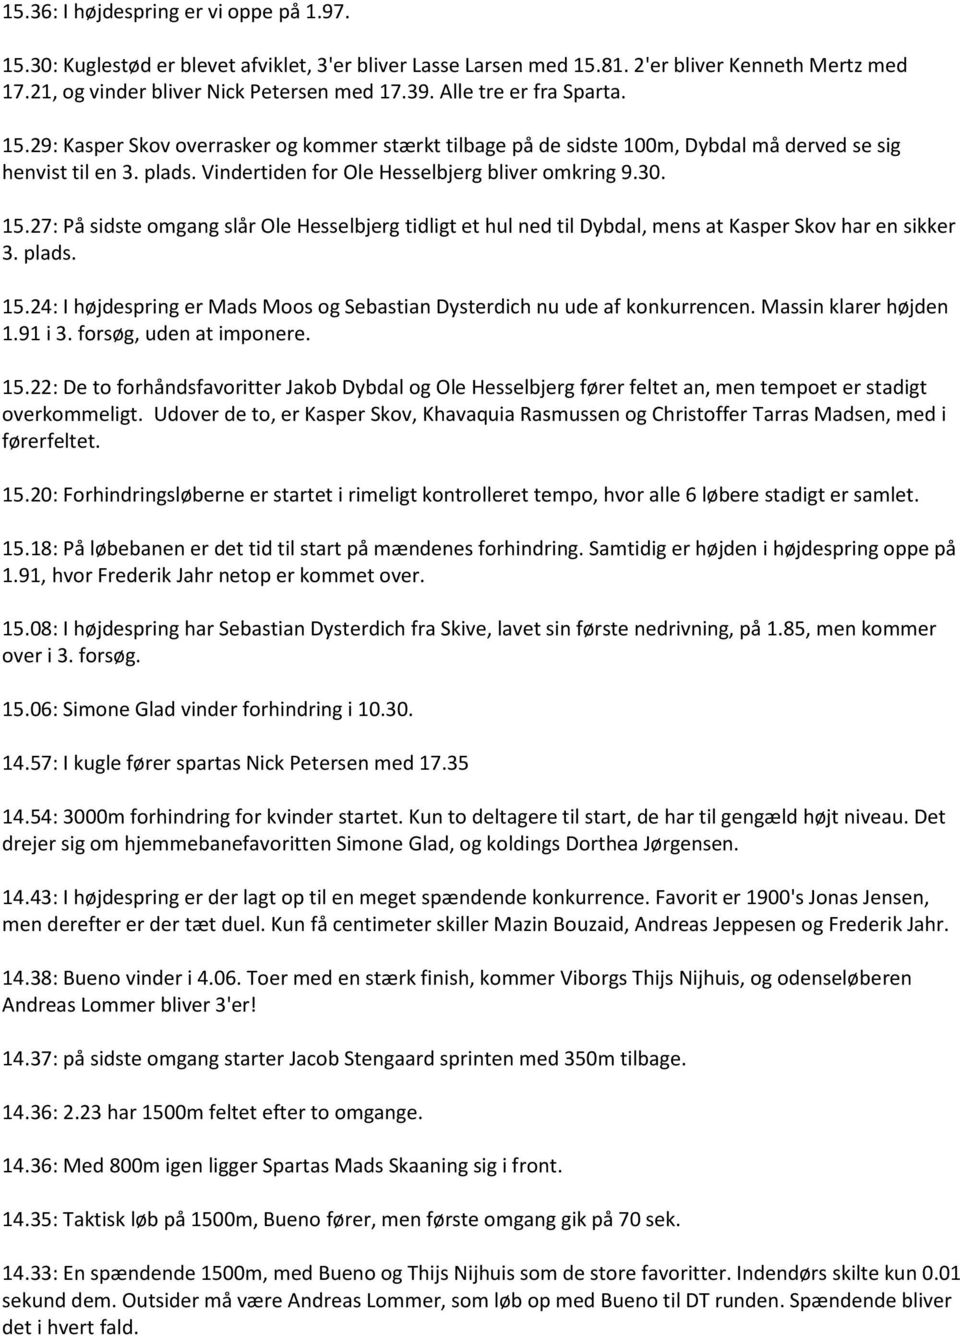 15.27: På sidste omgang slår Ole Hesselbjerg tidligt et hul ned til Dybdal, mens at Kasper Skov har en sikker 3. plads. 15.